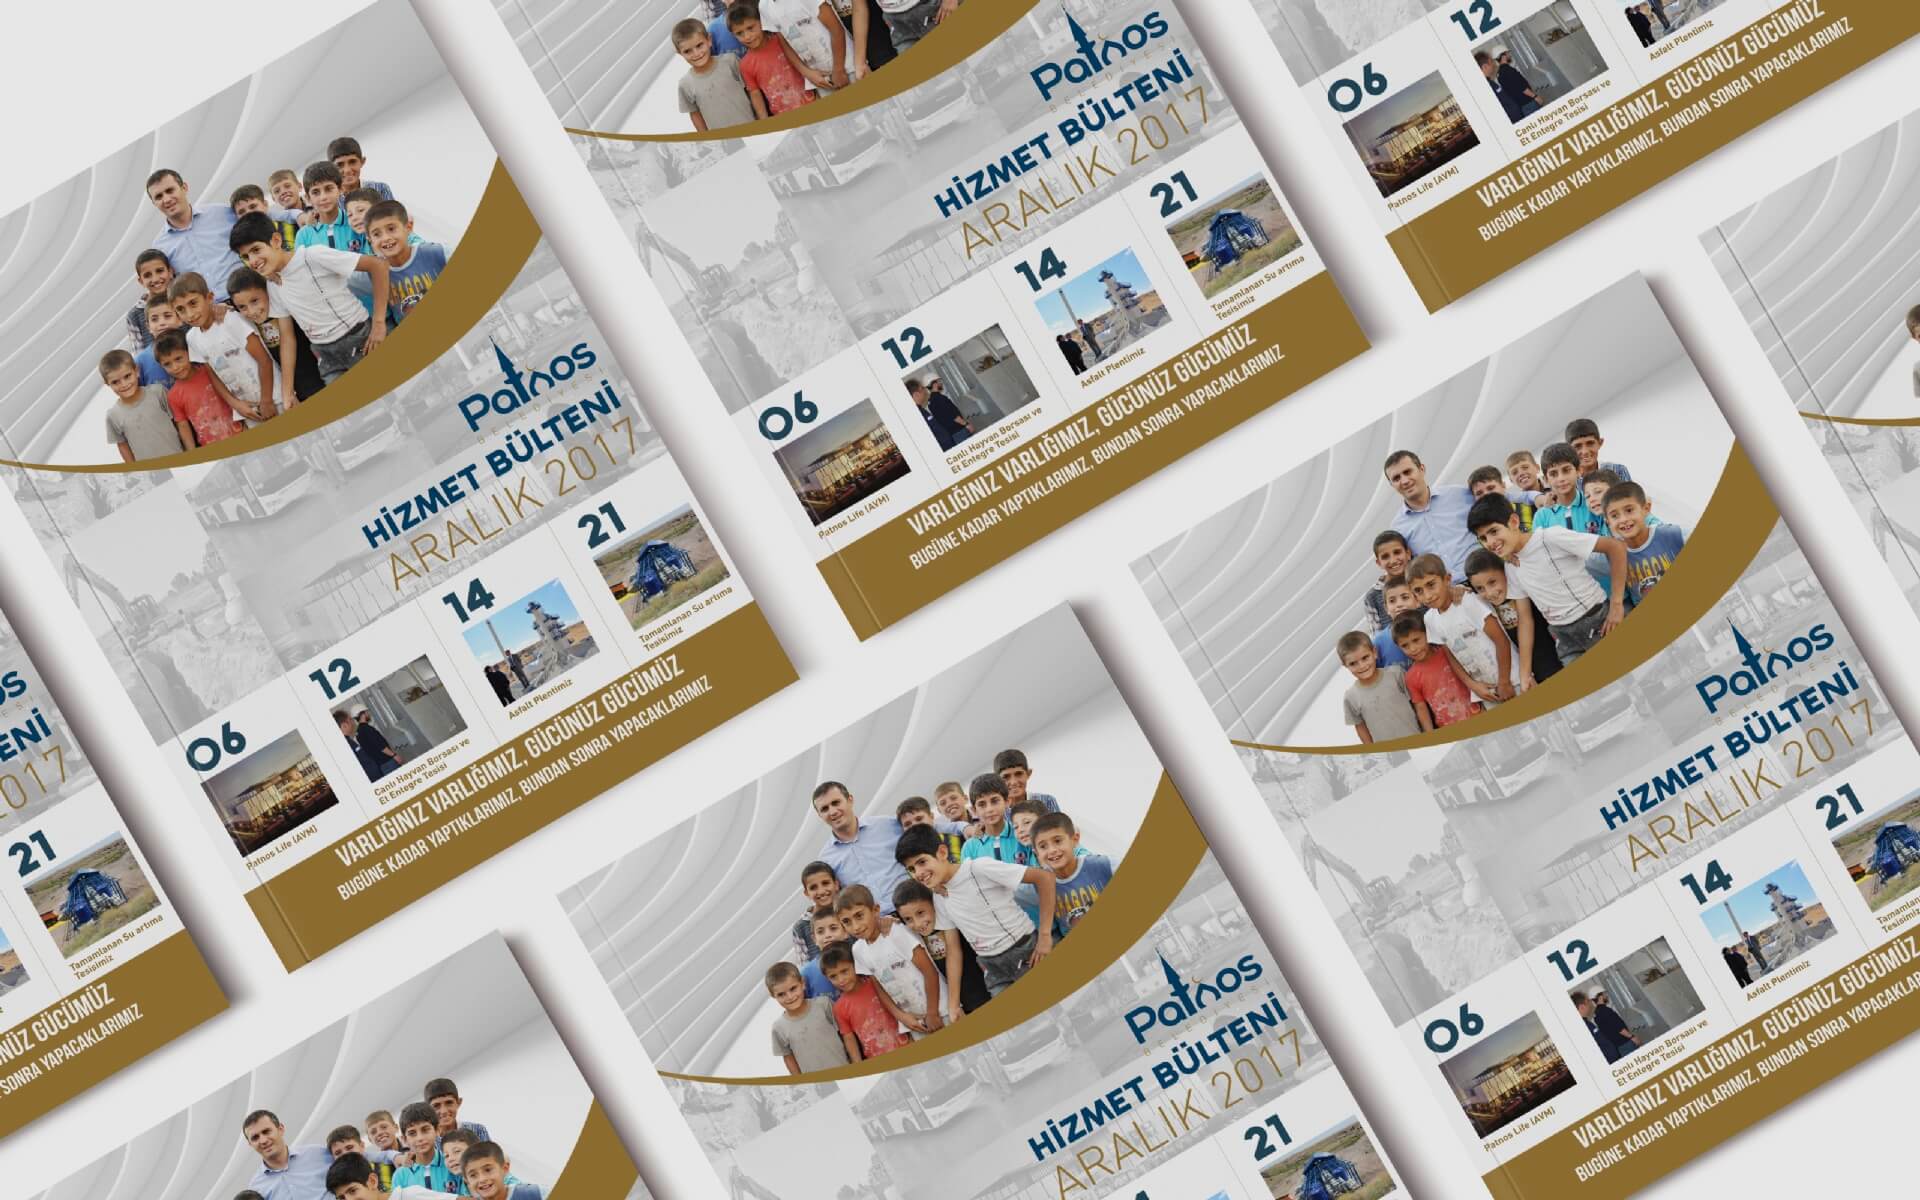 Patnos Belediyesi Katalog Tasarımı